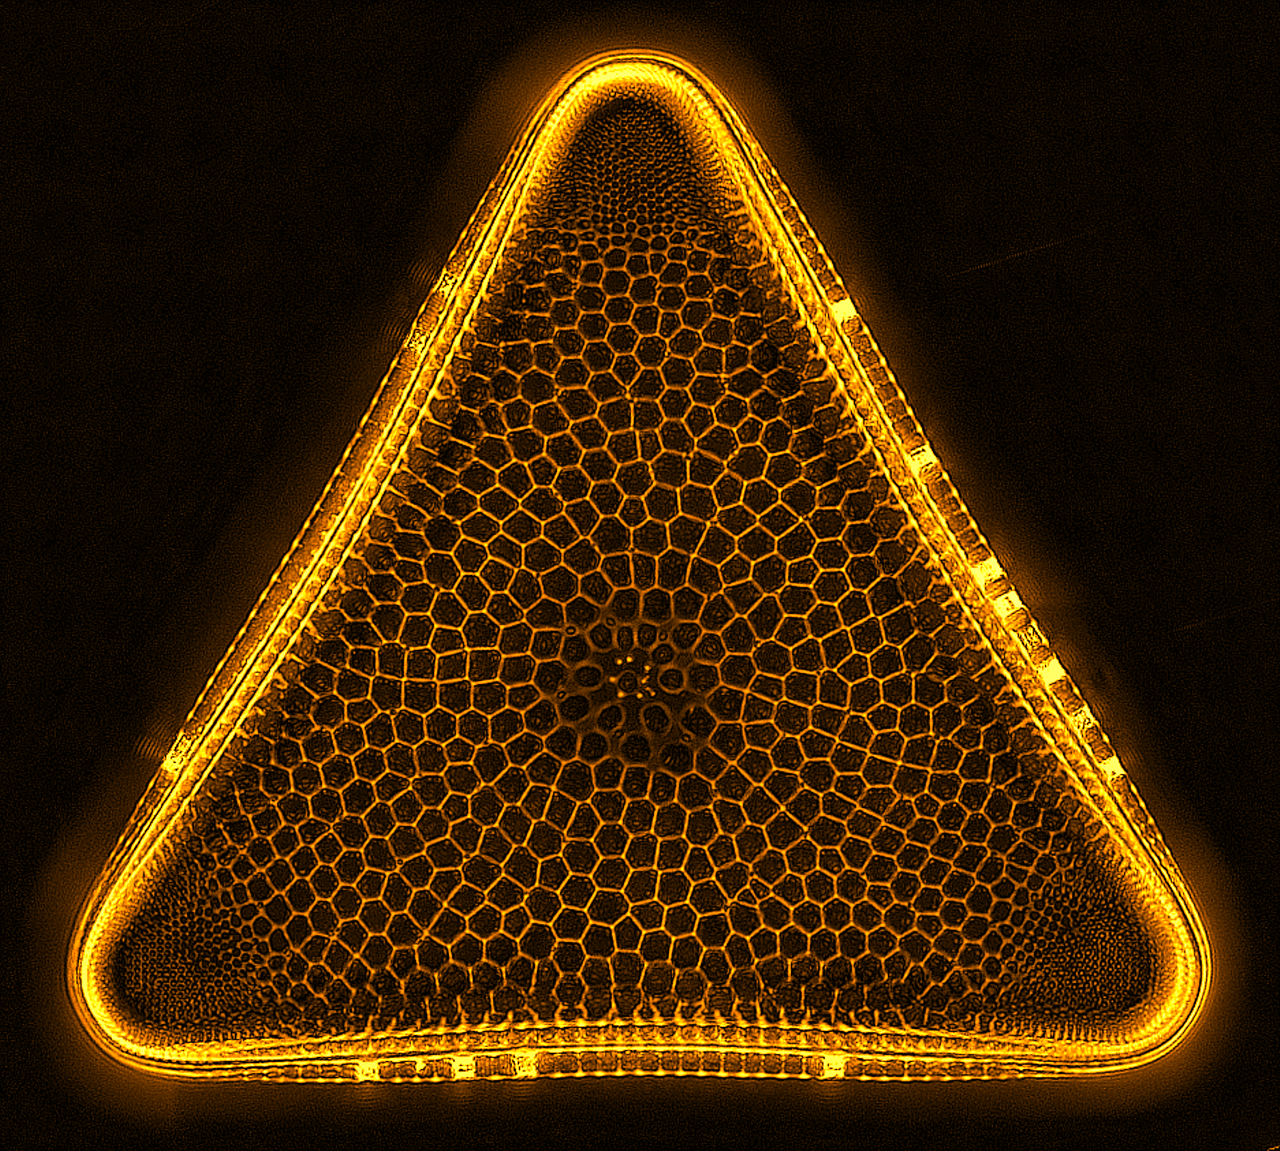 Diatom Trigonium taken on OI DIC microscope 